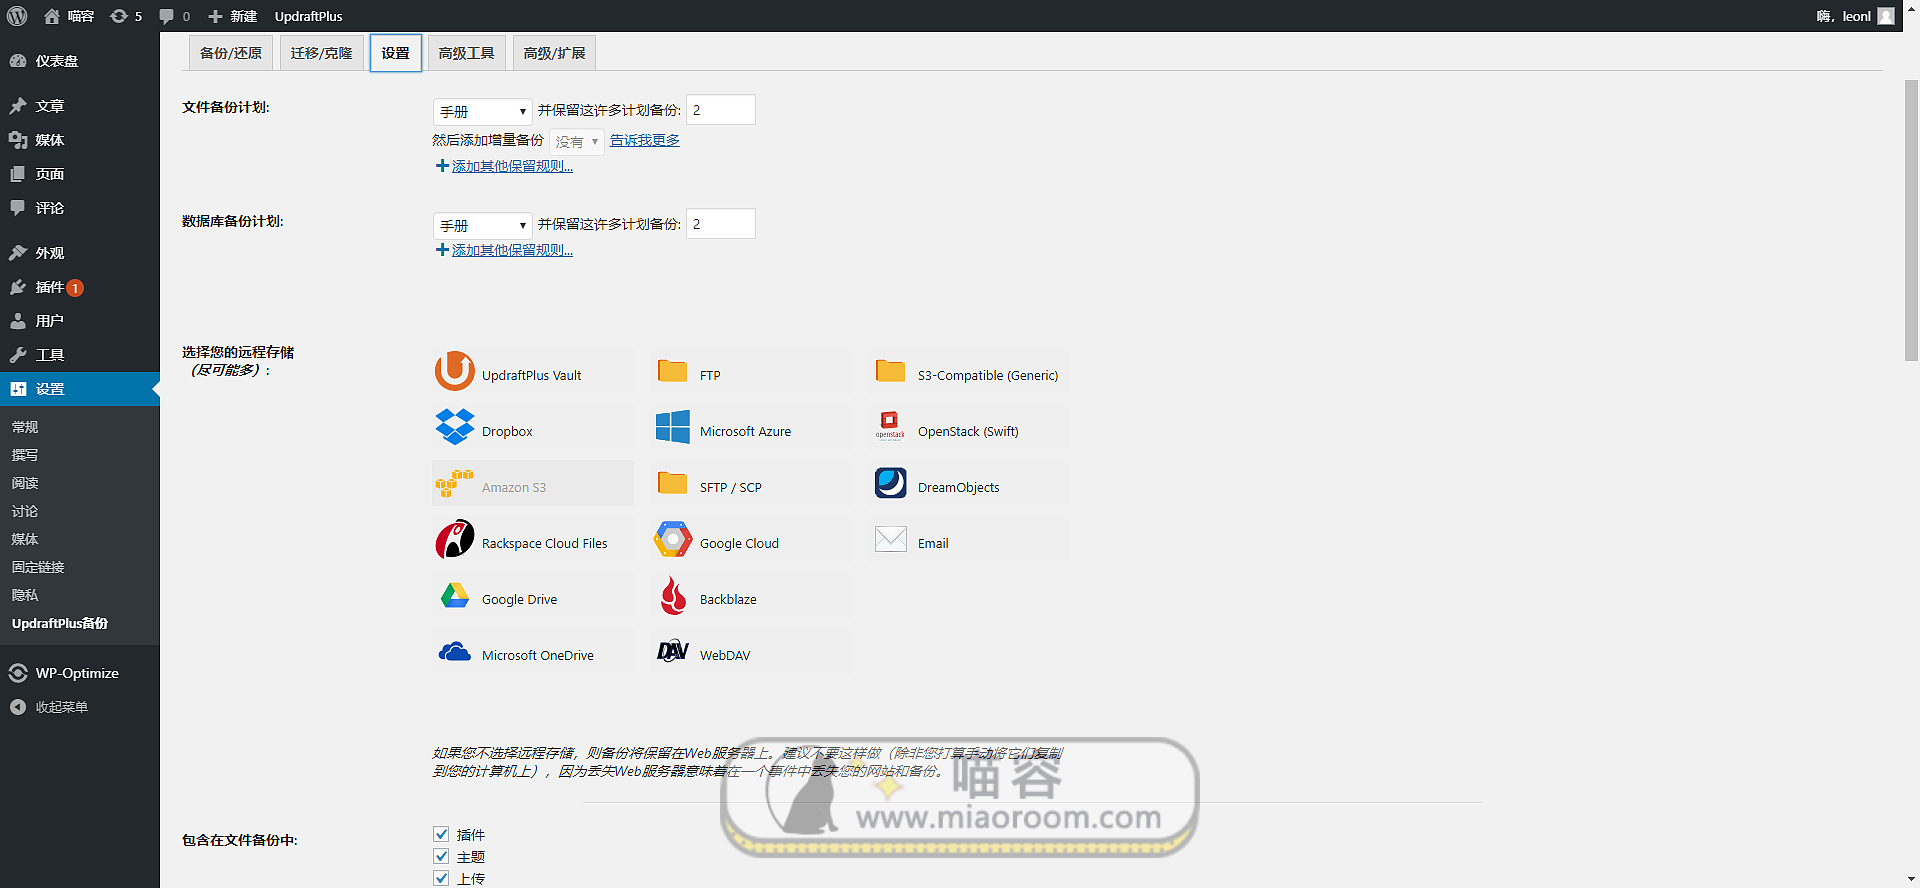 「WP插件」 UpdraftPlus Premium v2.16.19.24 专业版+破解+中文汉化 【已更新】